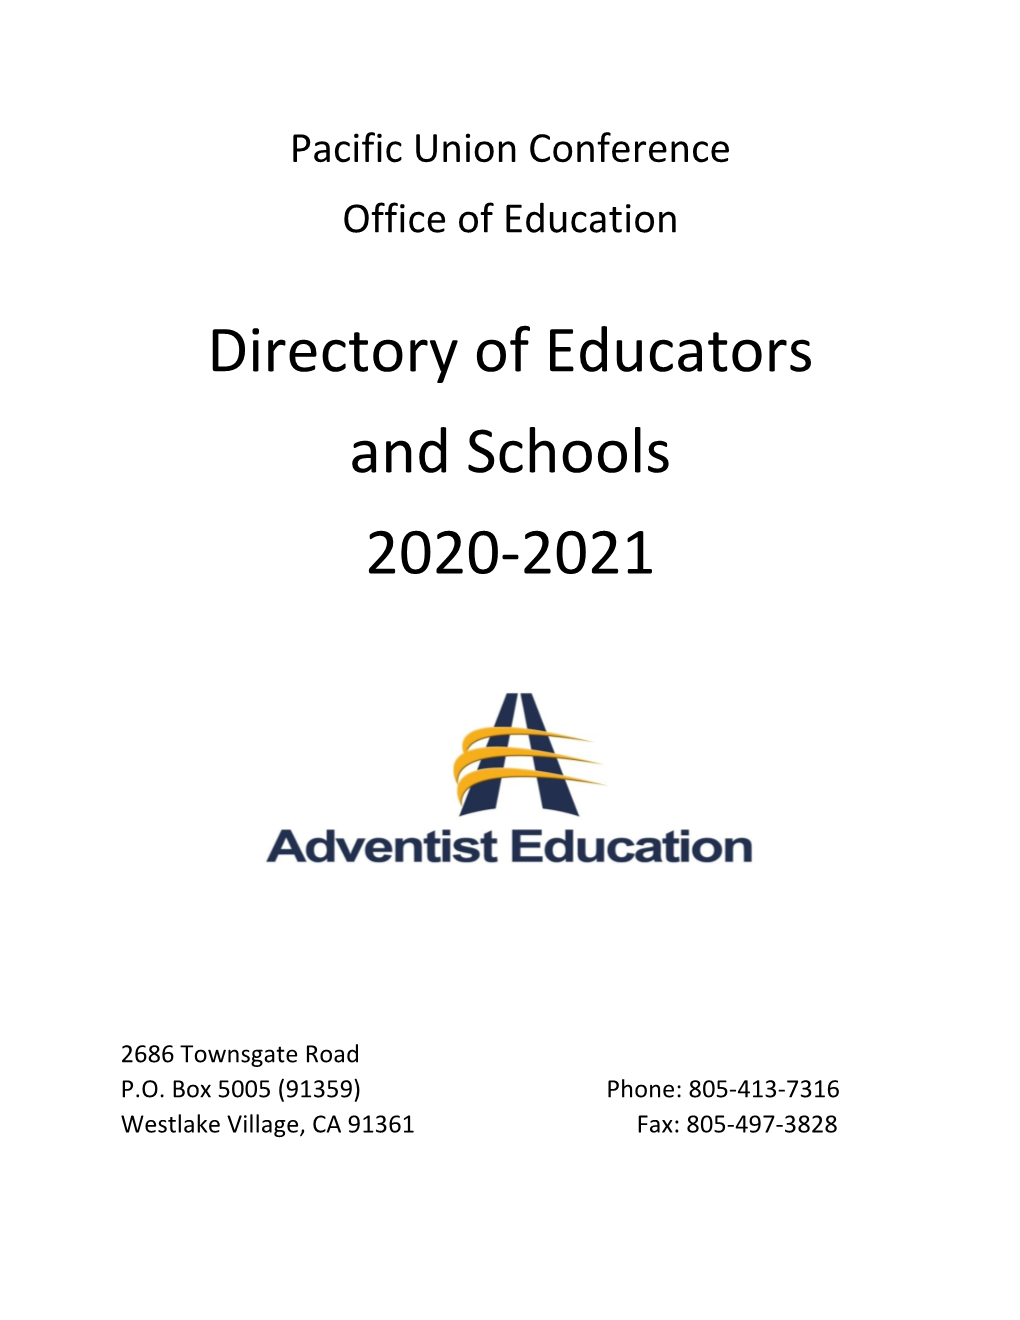 Directory of Educators and Schools 2020-2021